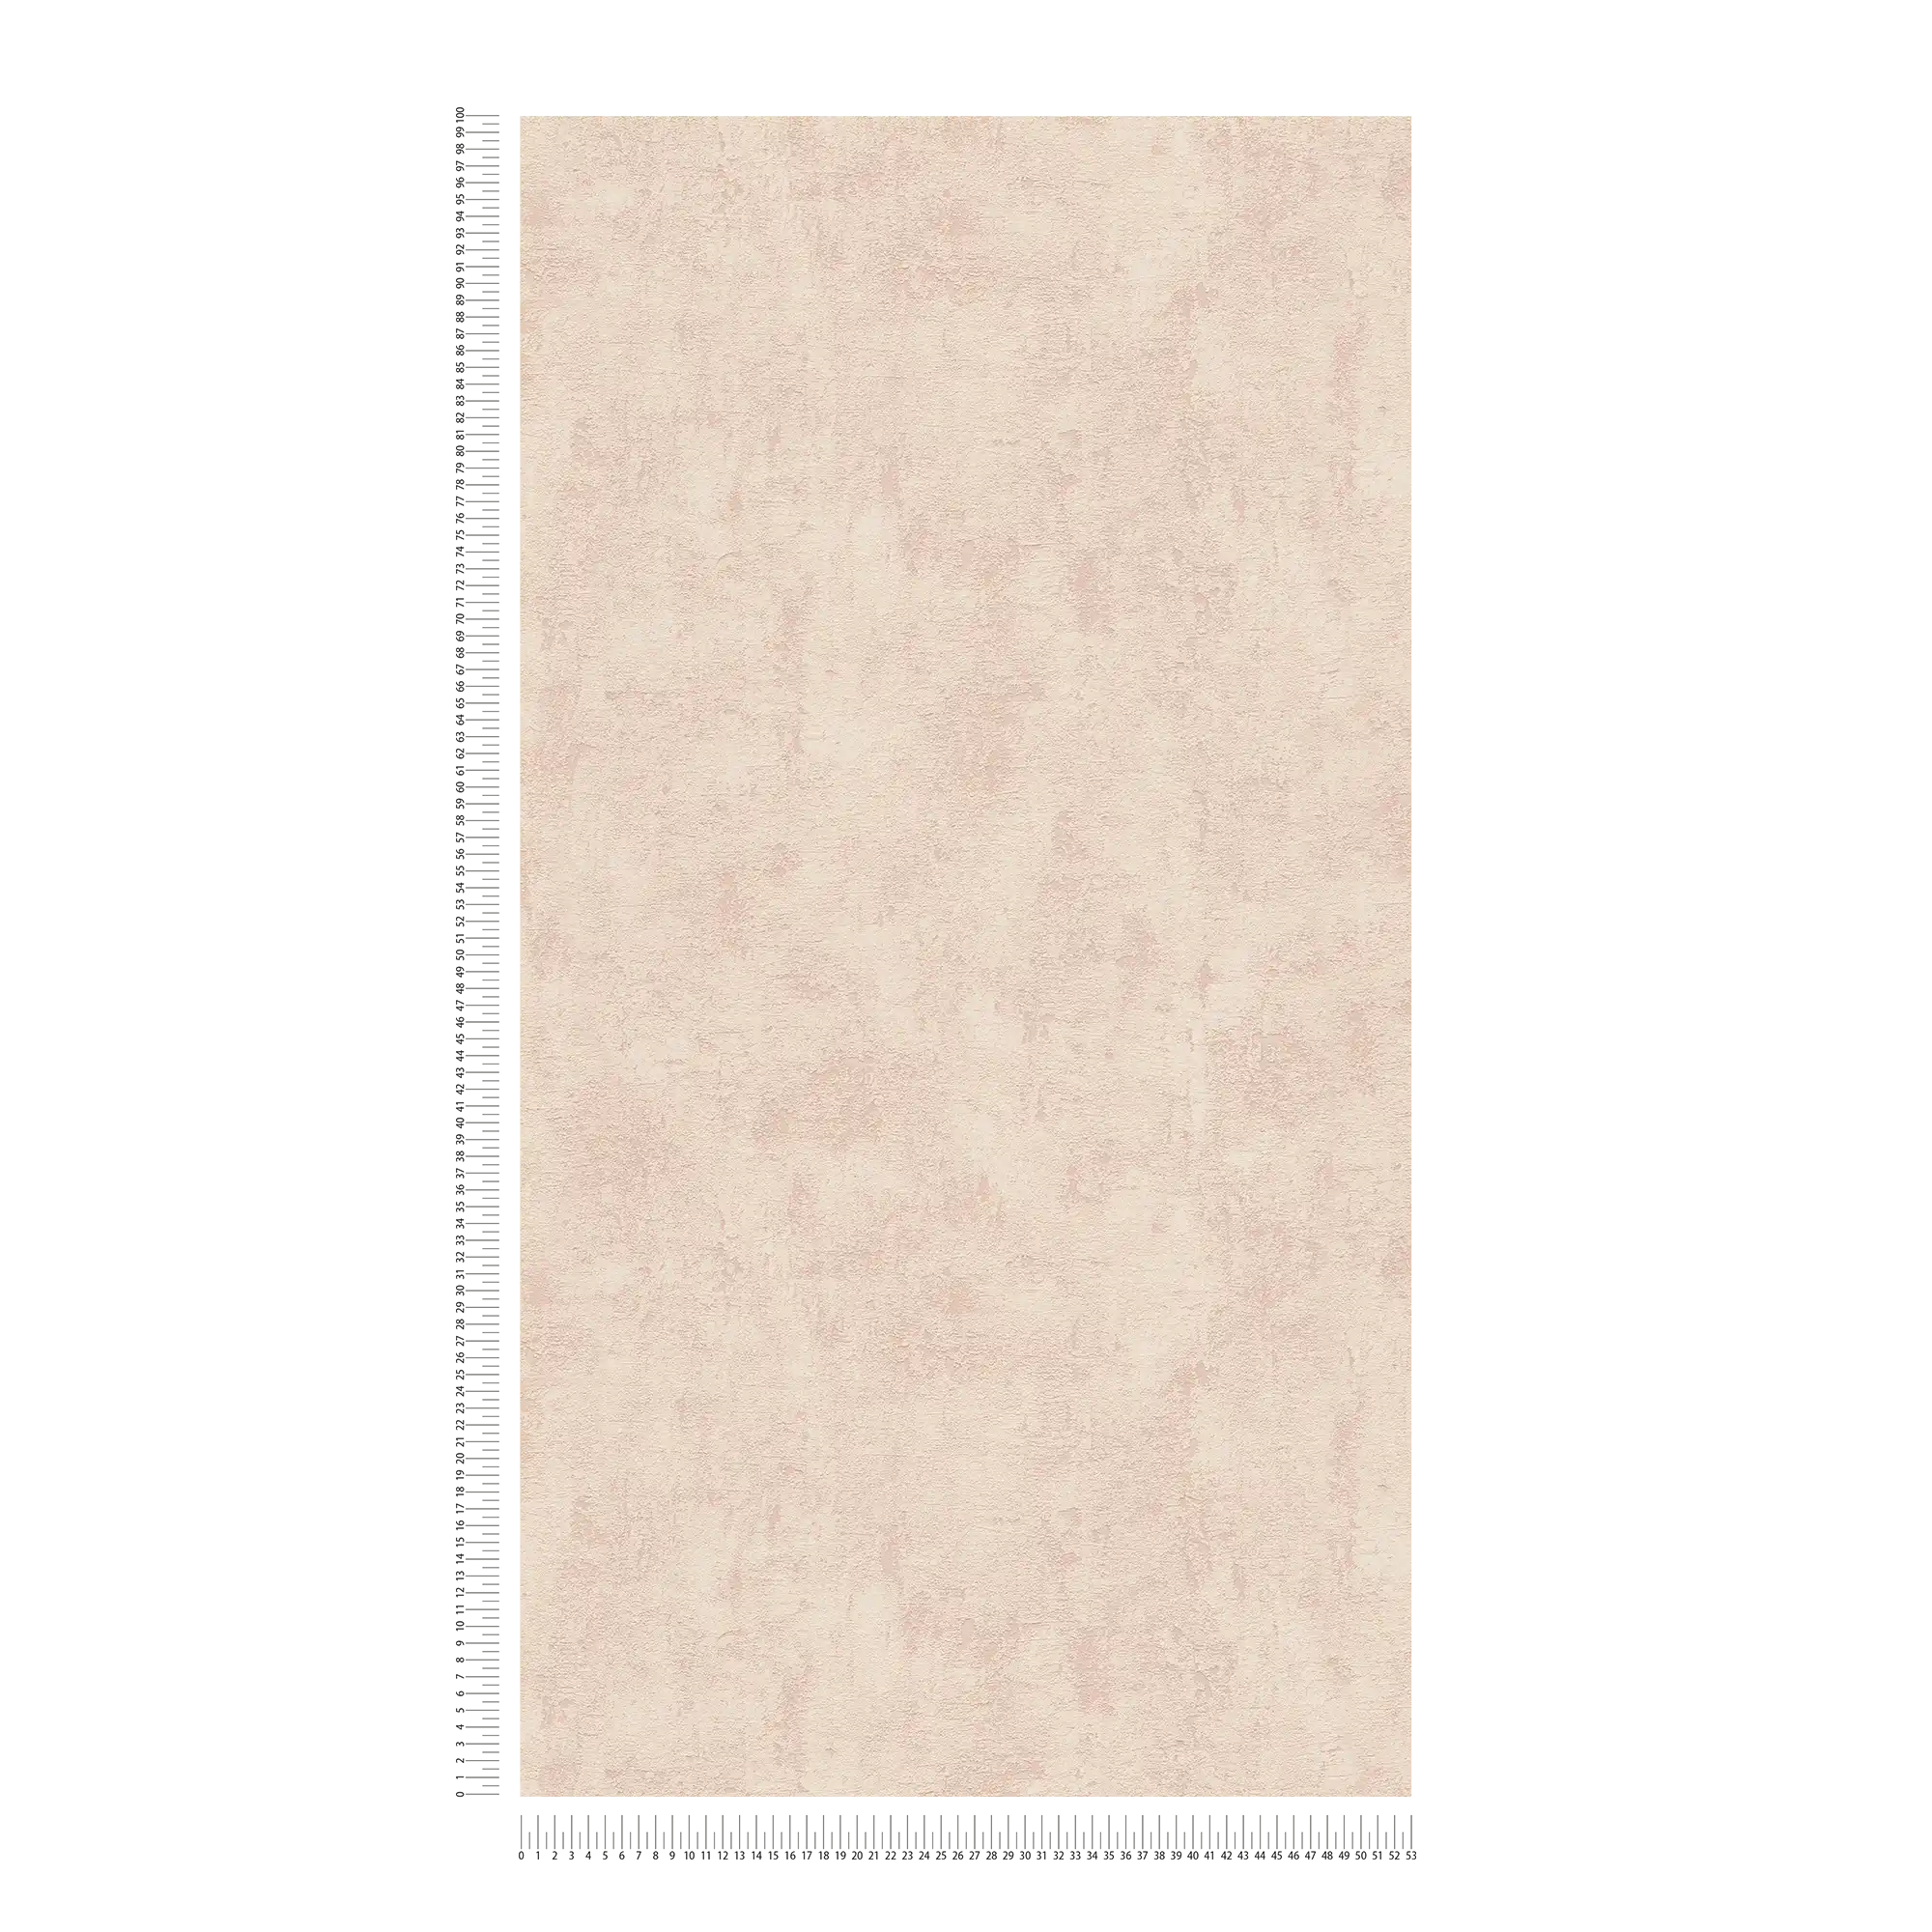             Carta da parati ottica Plaster in tessuto non tessuto color sabbia-beige con effetto struttura
        